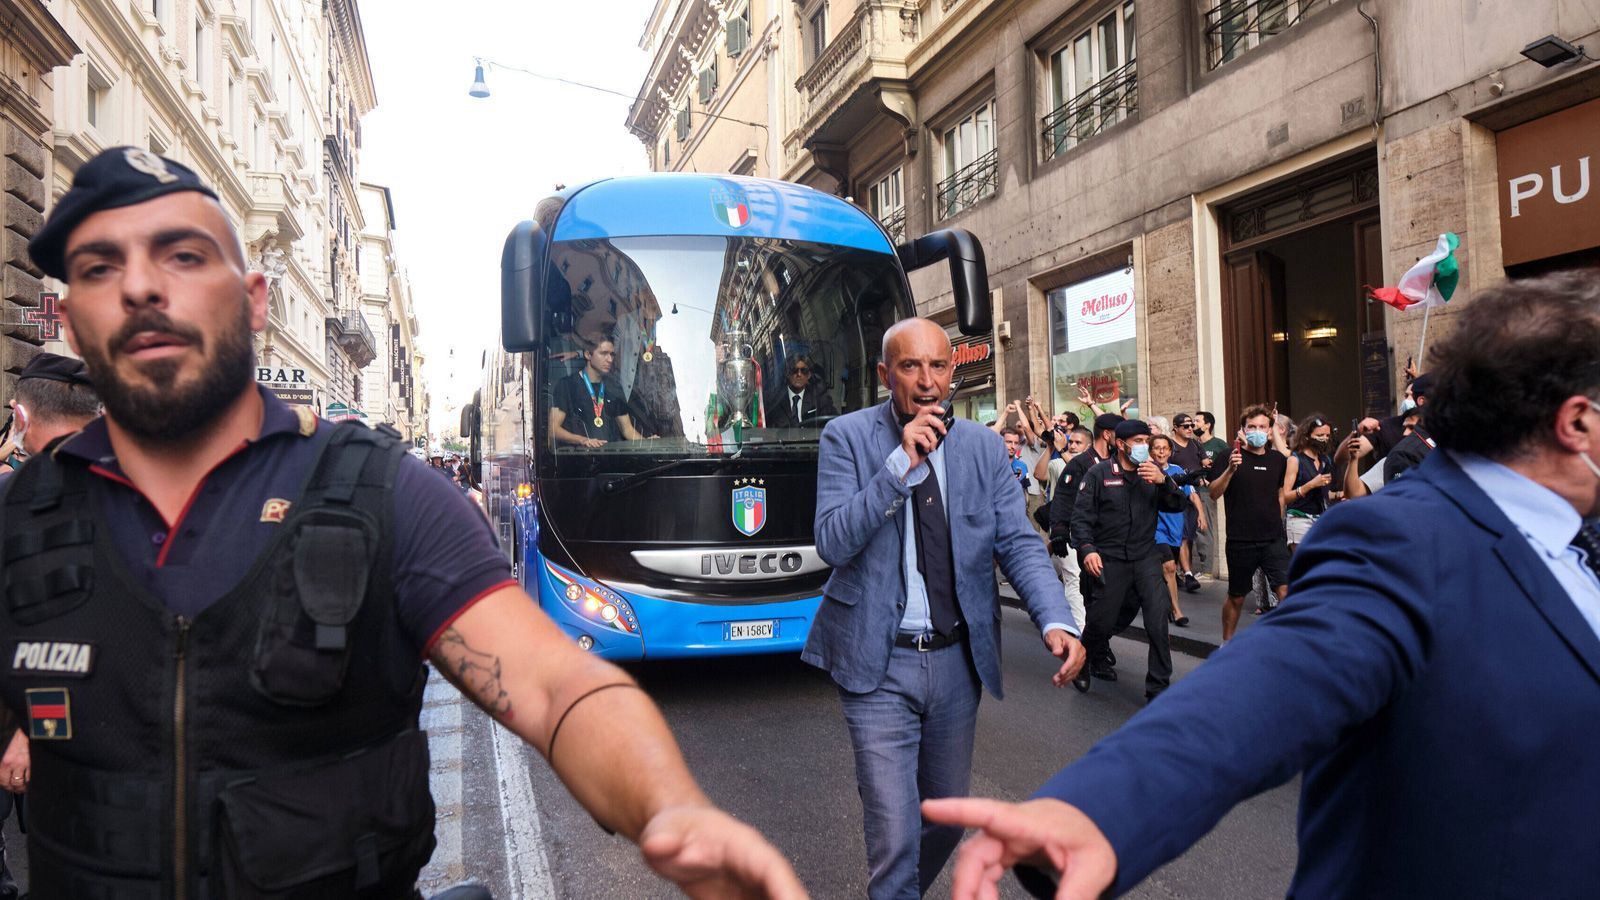 
                <strong>Der Präsident wartet schon</strong><br>
                Der Bus wird von Polizisten und Sicherheitsbeamten durch die Straßen Roms gelotst.
              